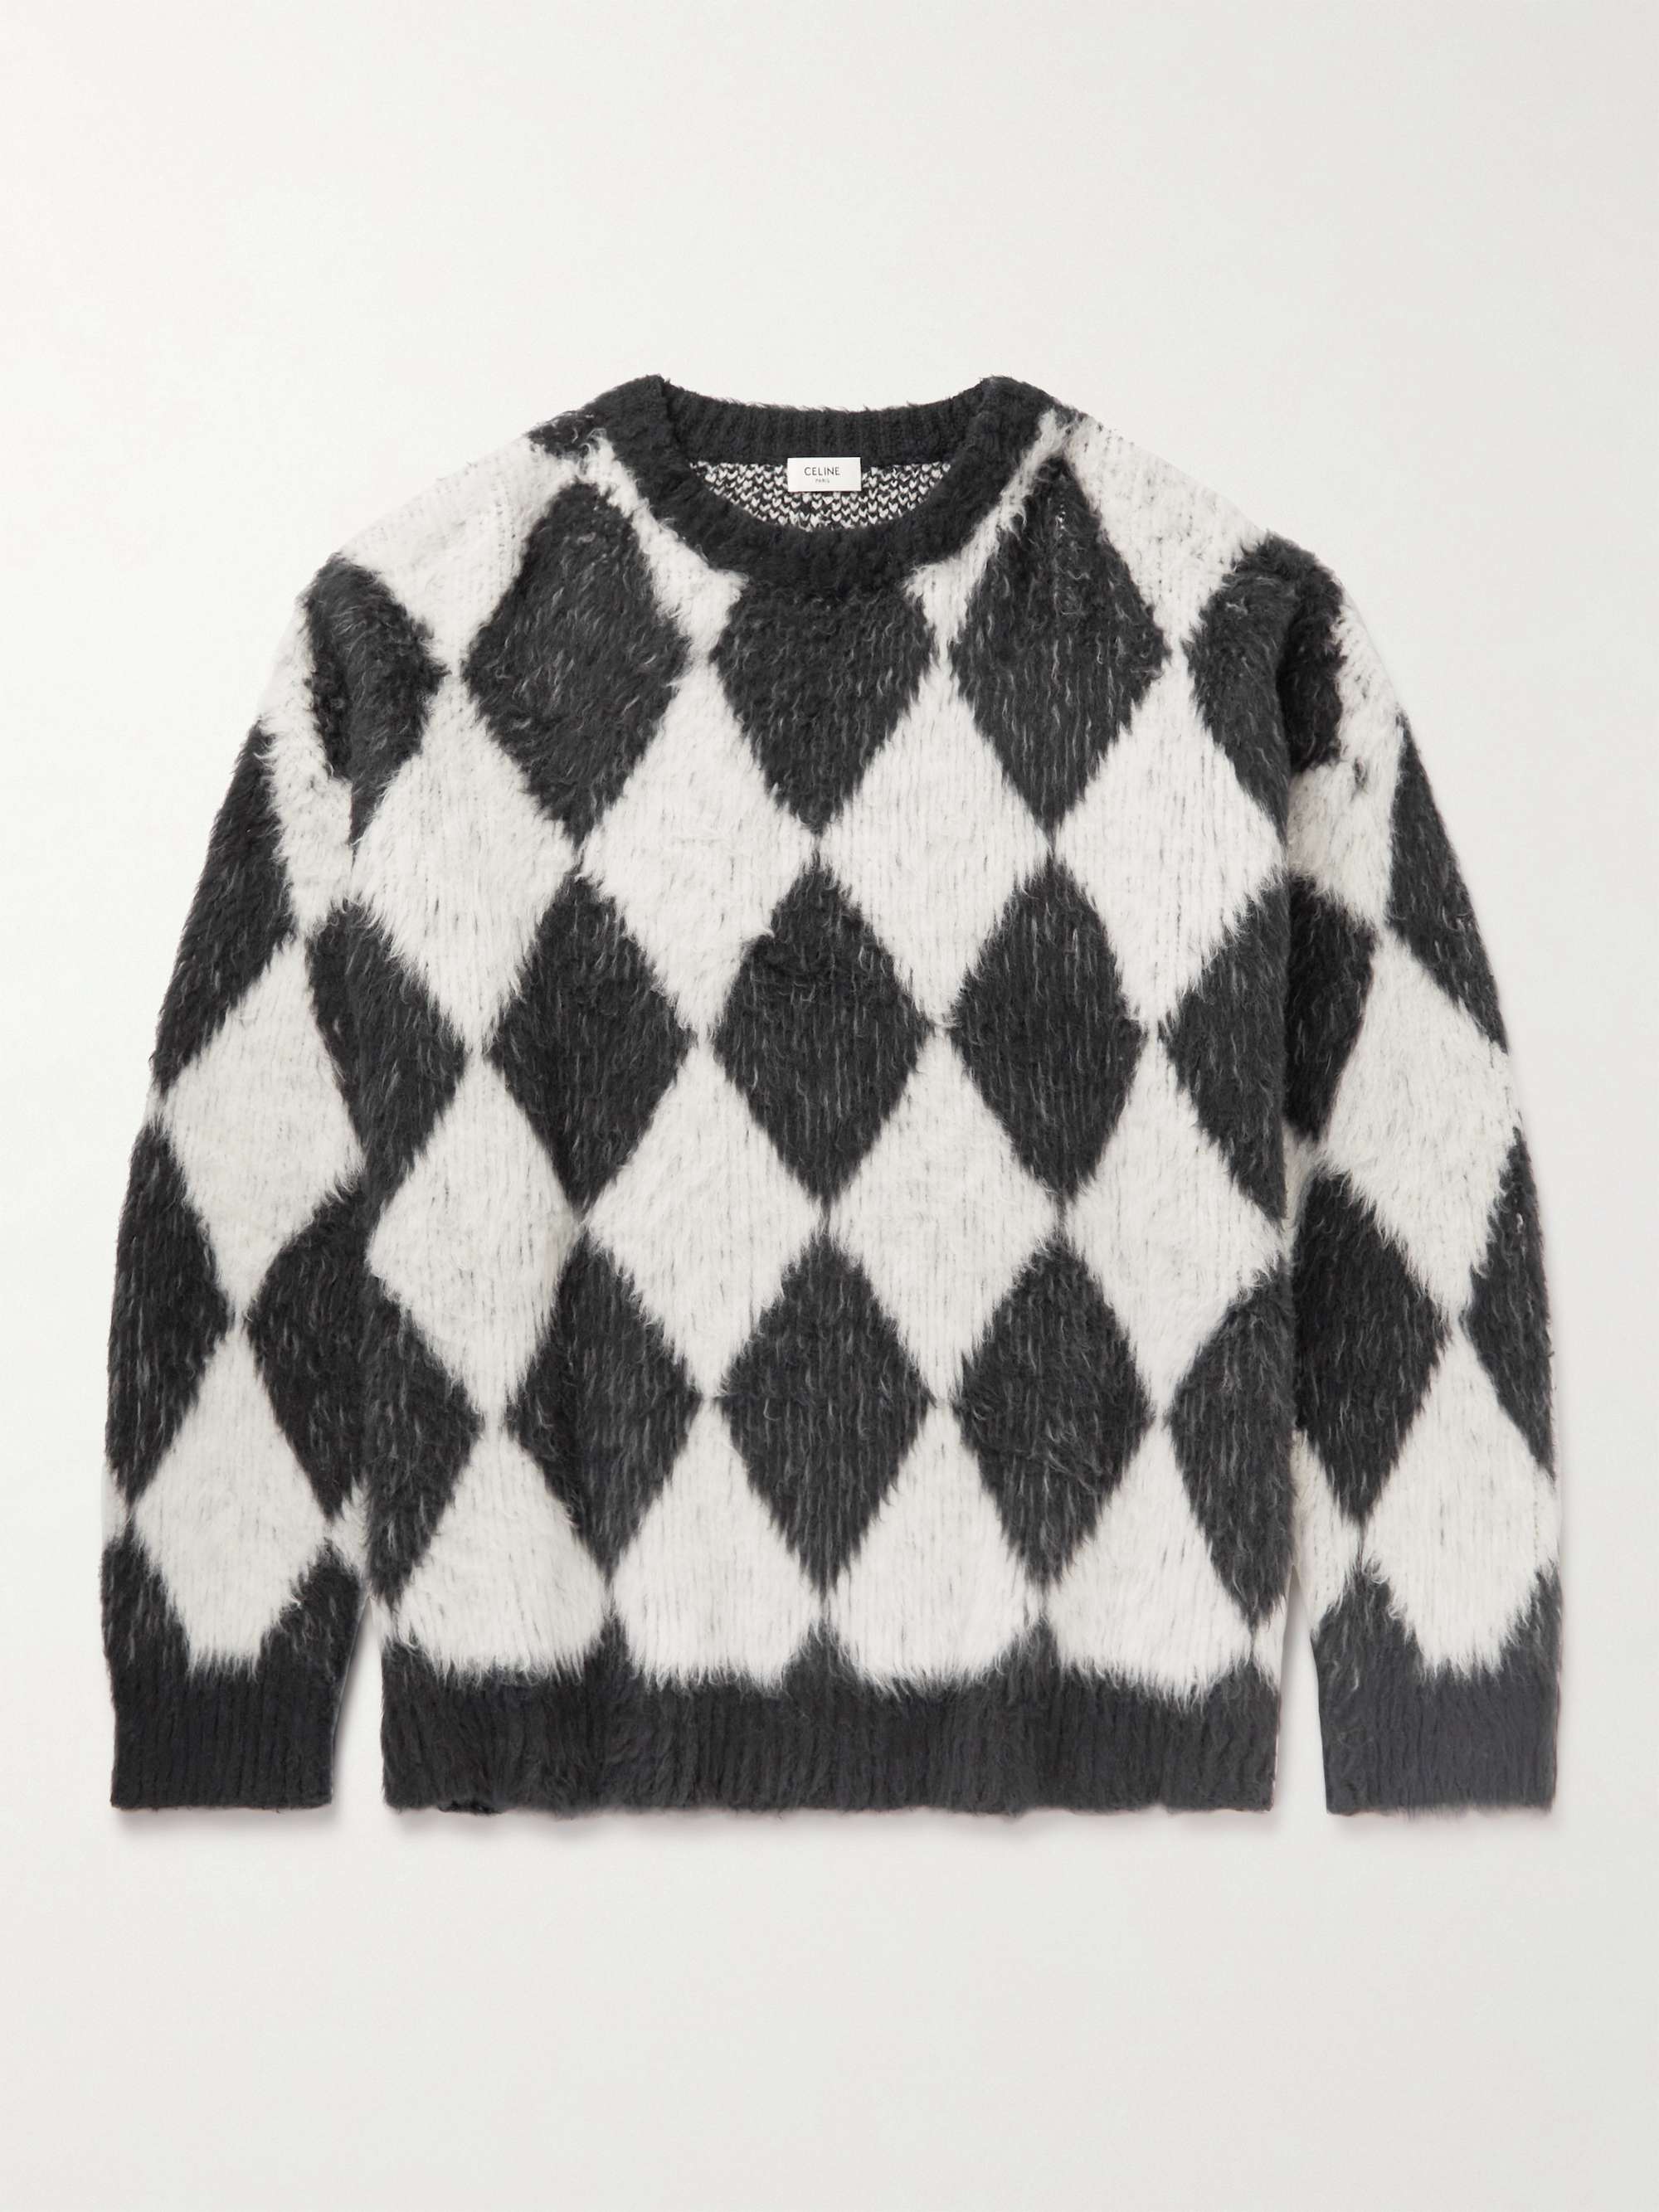 CELINE HOMME Argyle Brushed Cotton-Blend Sweater for Men | MR PORTER